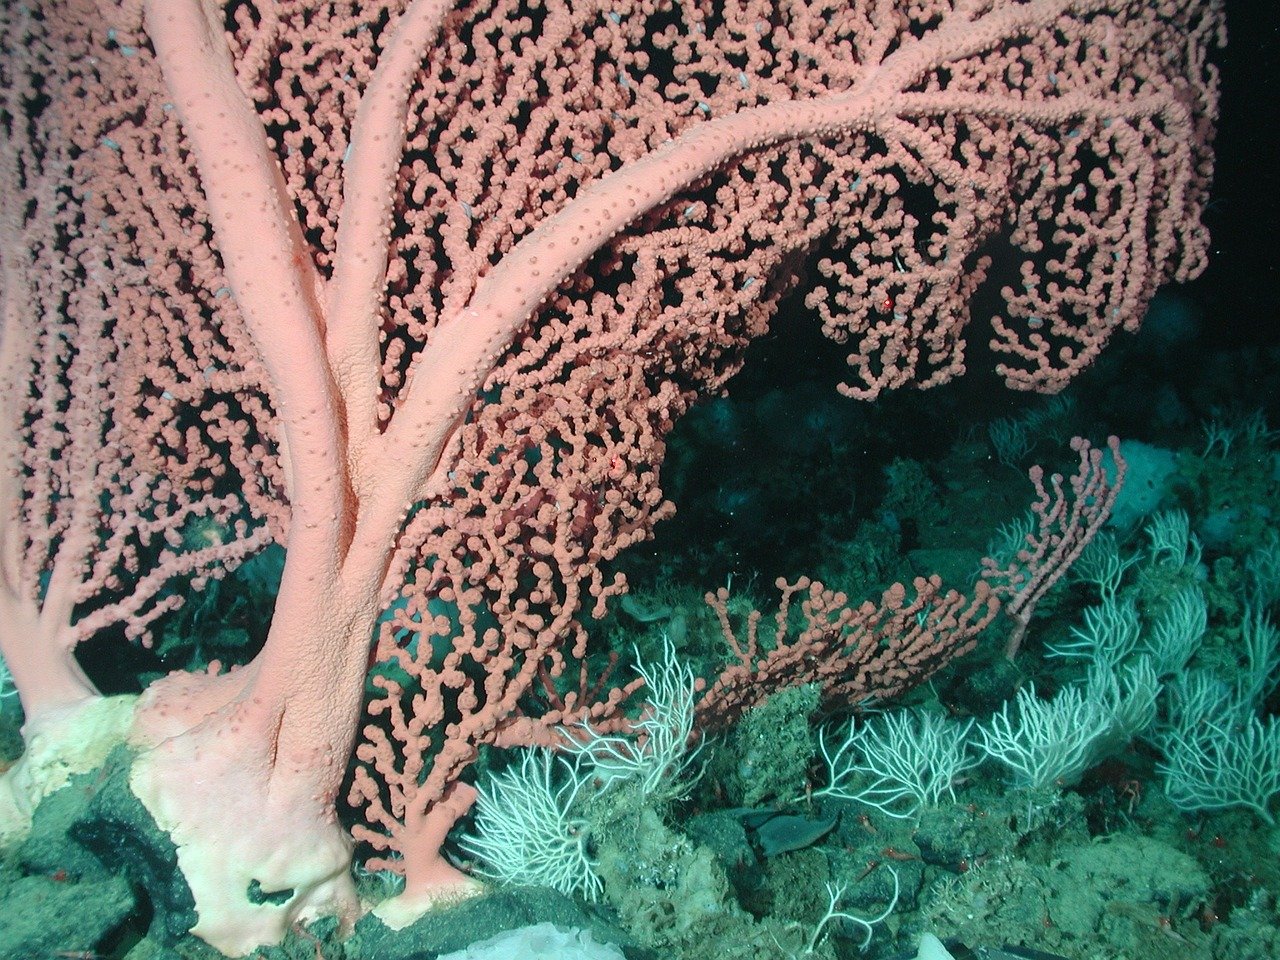 Grande barriera corallina, la "fatidica notte" in cui scoppia l'amore